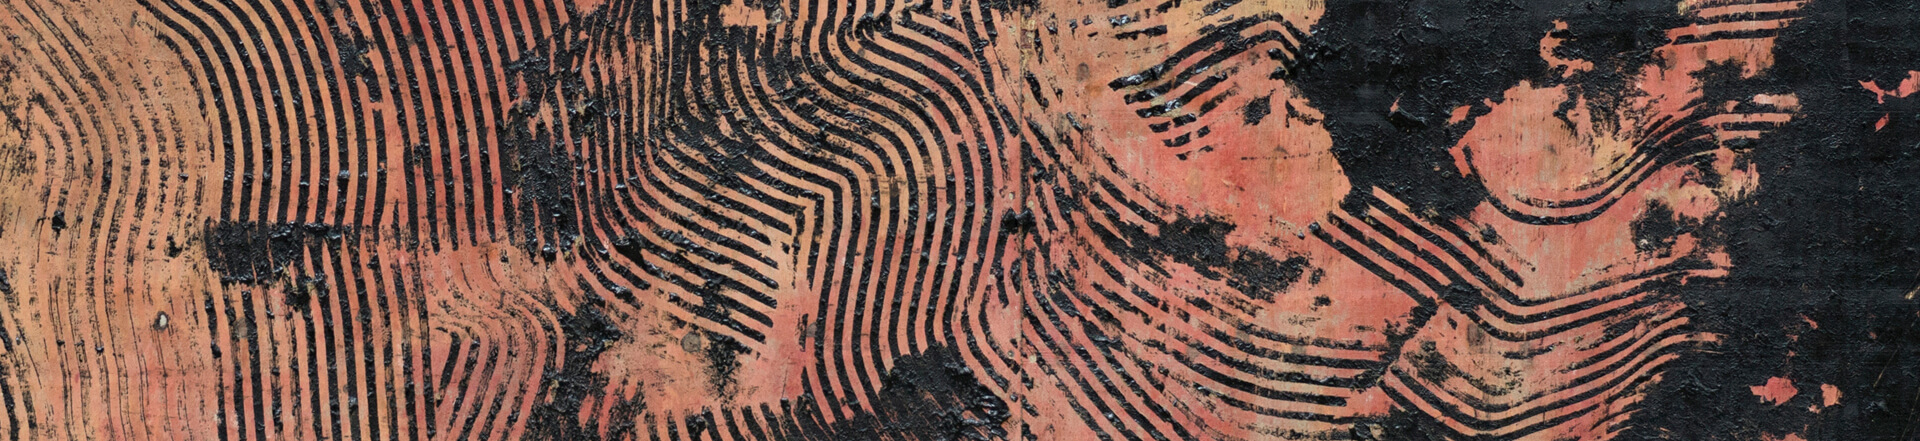 Kunstwerk aus Asphalt mit schwarzen Linien auf rötlichem Hintergrund ähnlich eines Fingerabdrucks von Albert Scopin